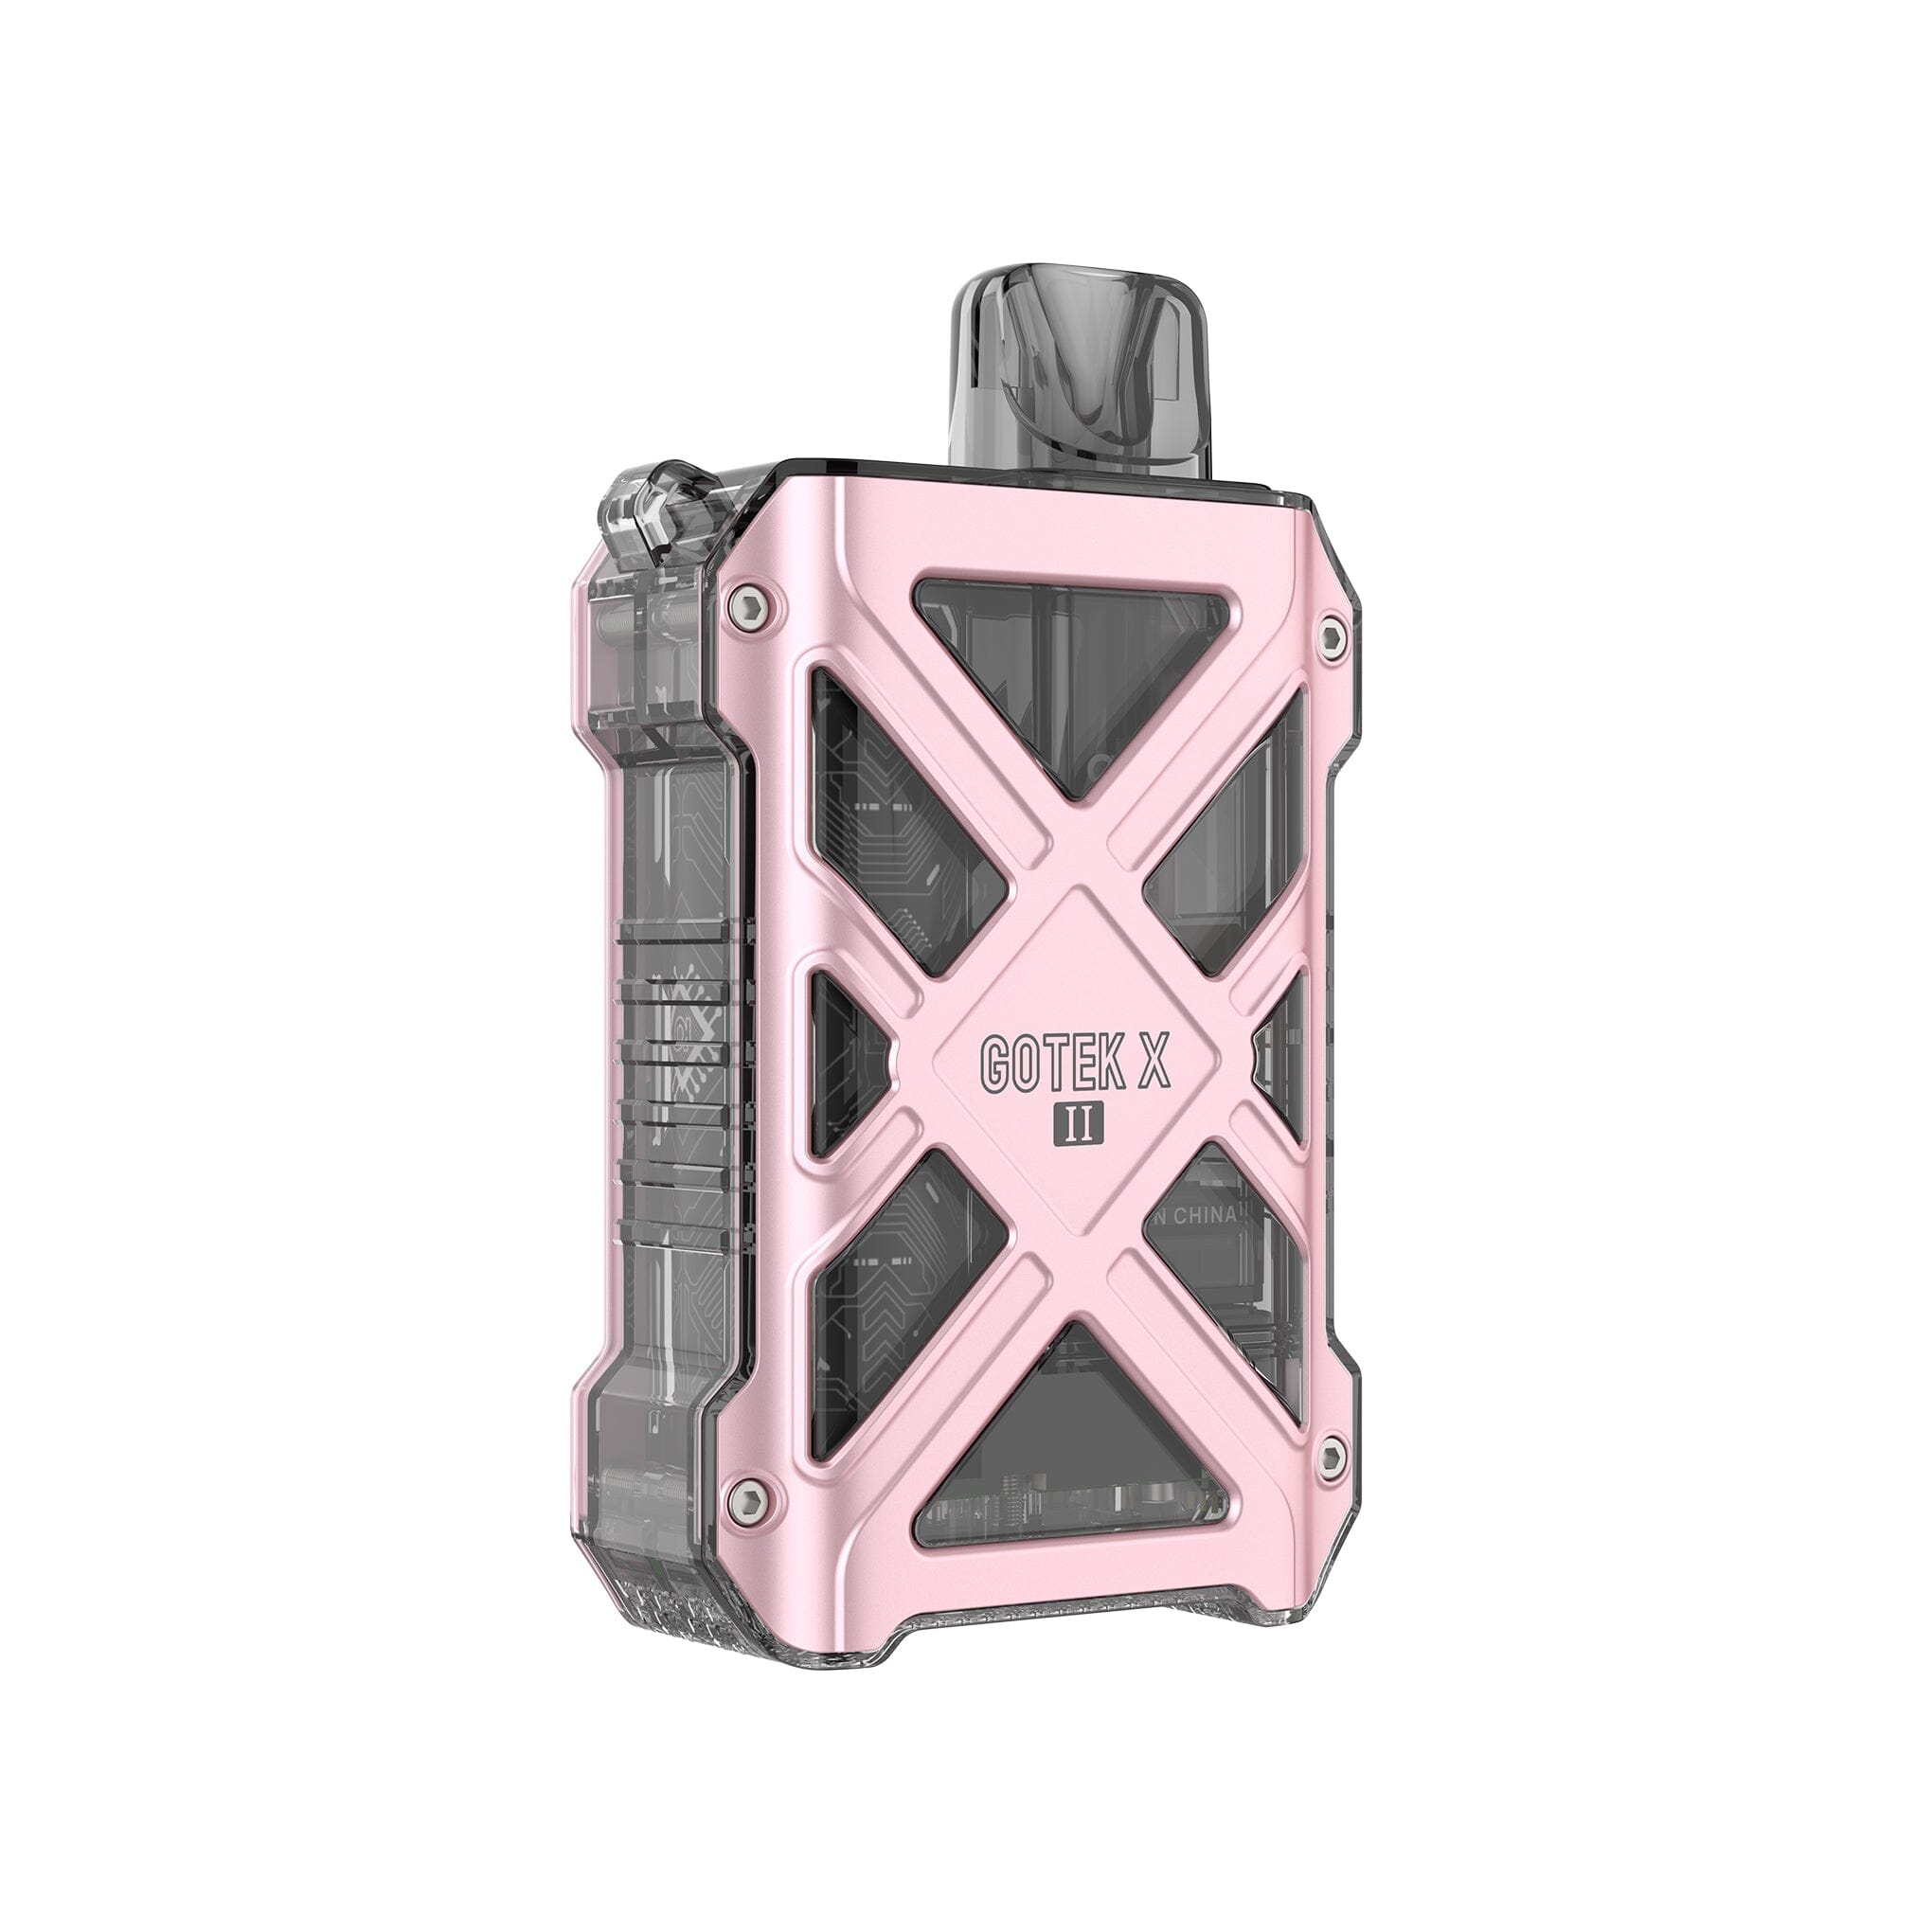 Aspire Gotek X II Kit Pink 